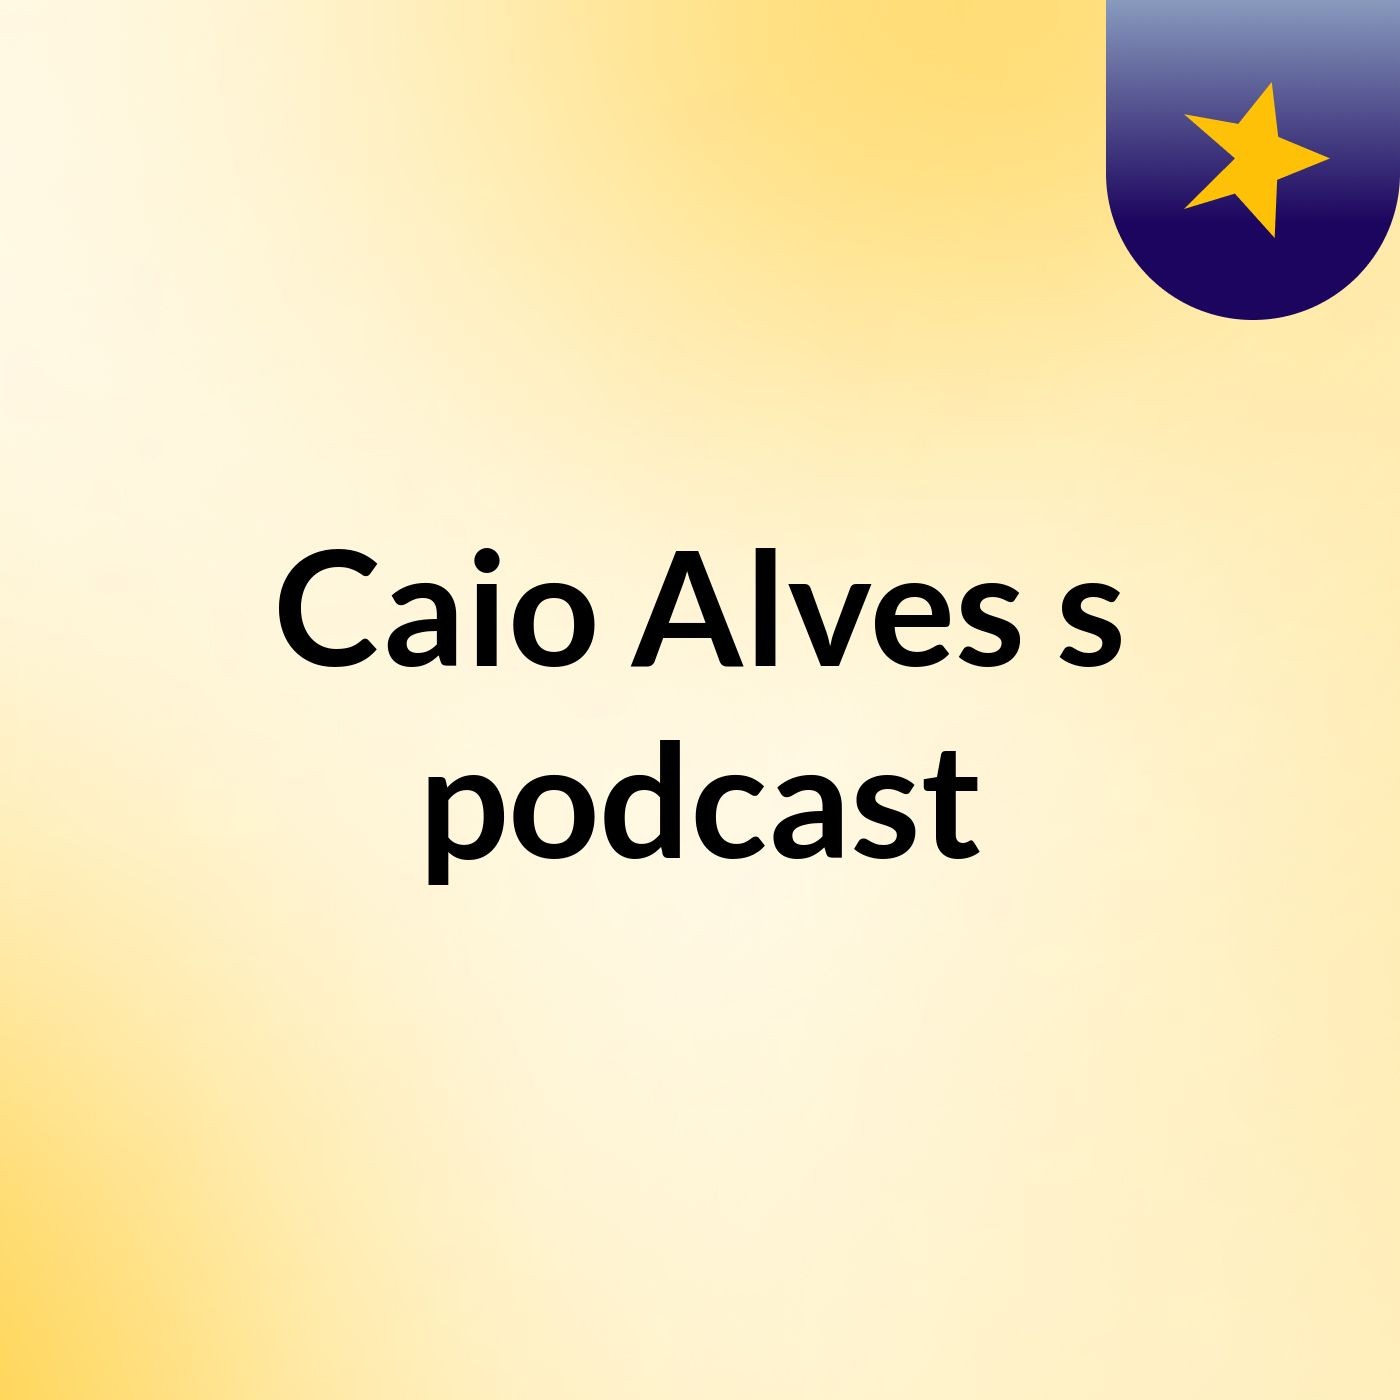 Caio Alves's podcast